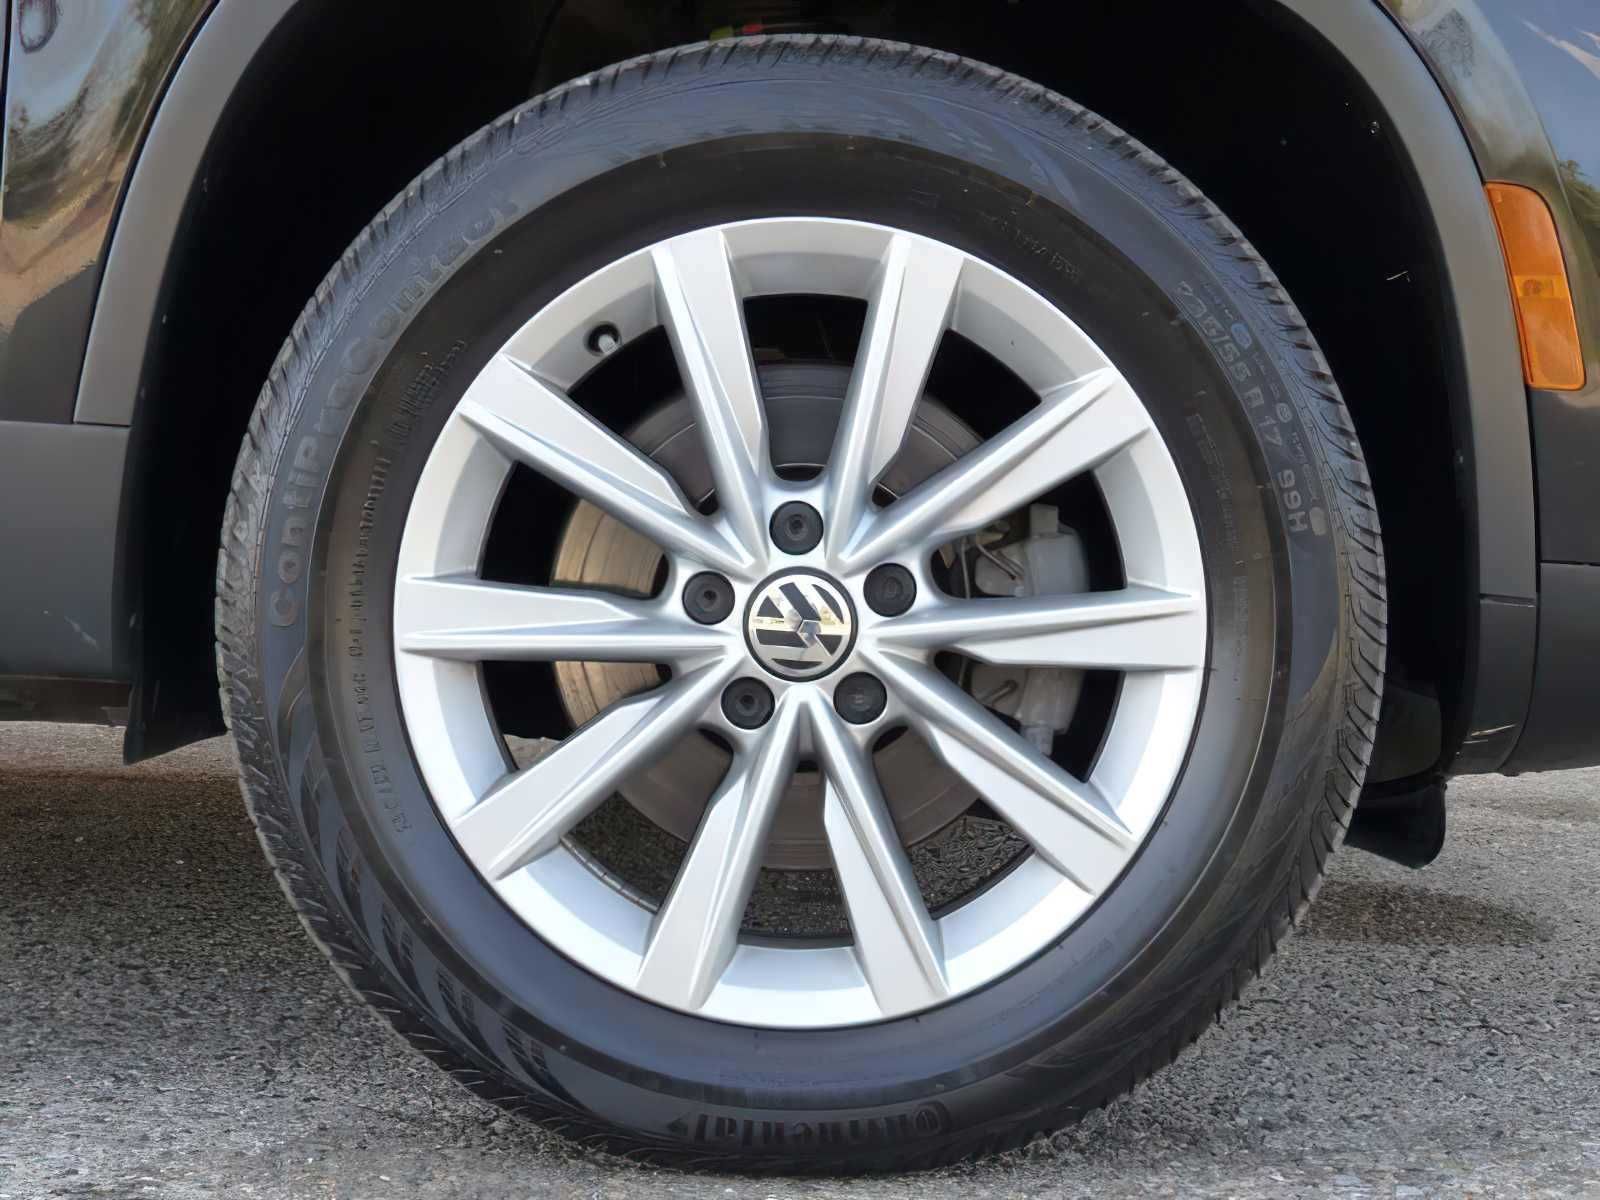 2017 Volkswagen Tiguan